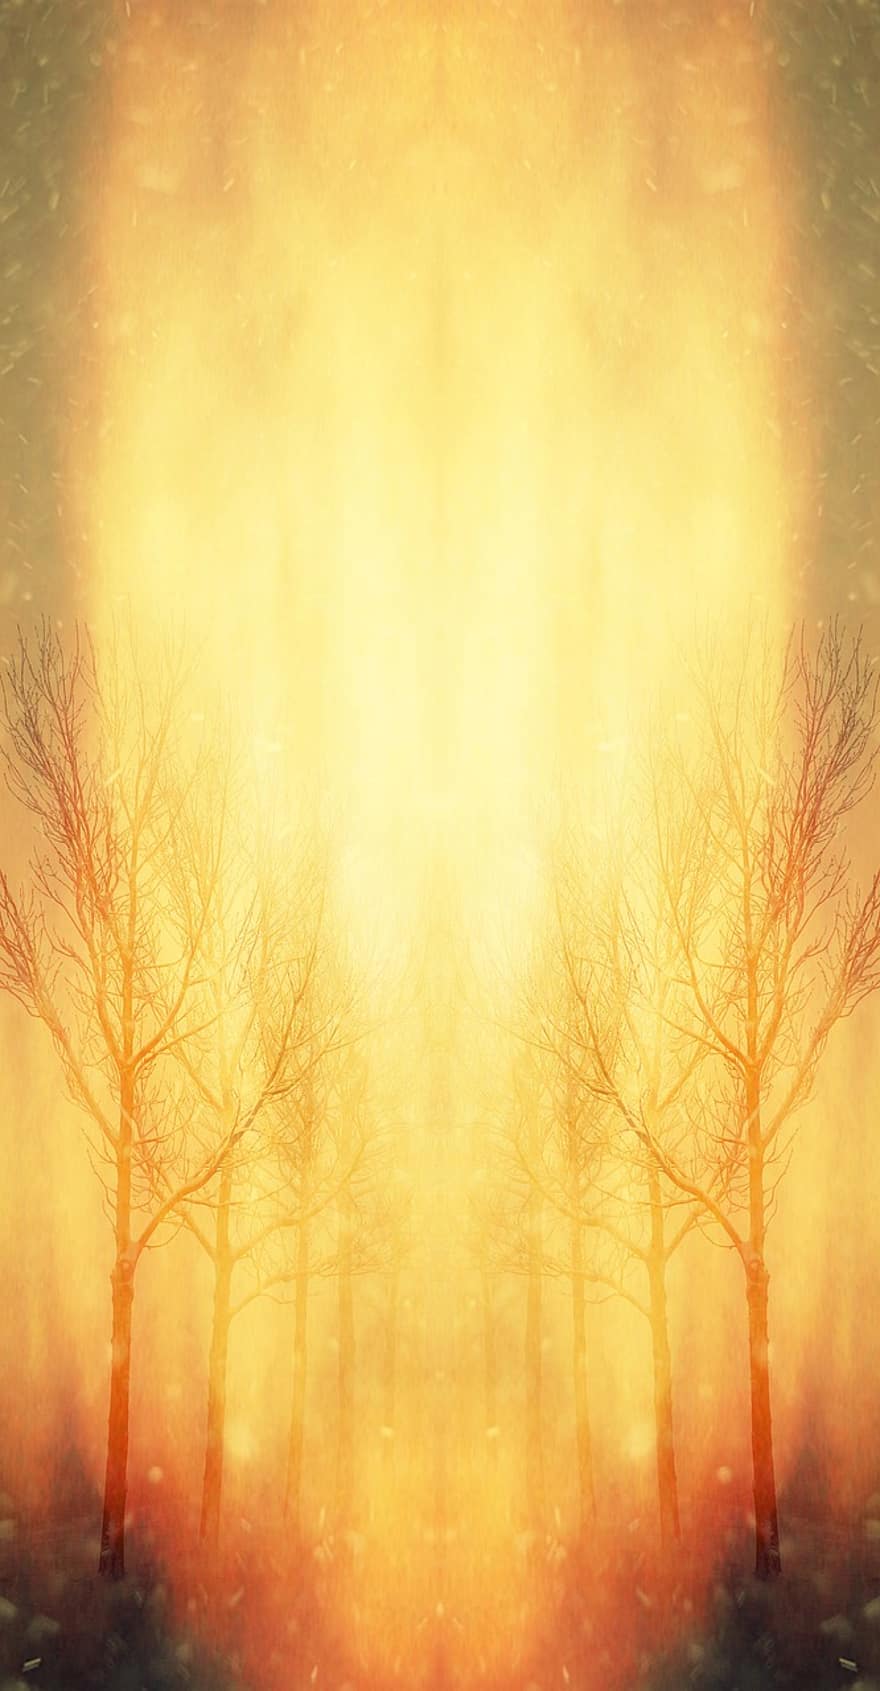 drzewa, surrealistyczny, Fantazja, mistyczny, uspokajający, atmosfera, tajemniczy, magia, mgła, dziwne, światło